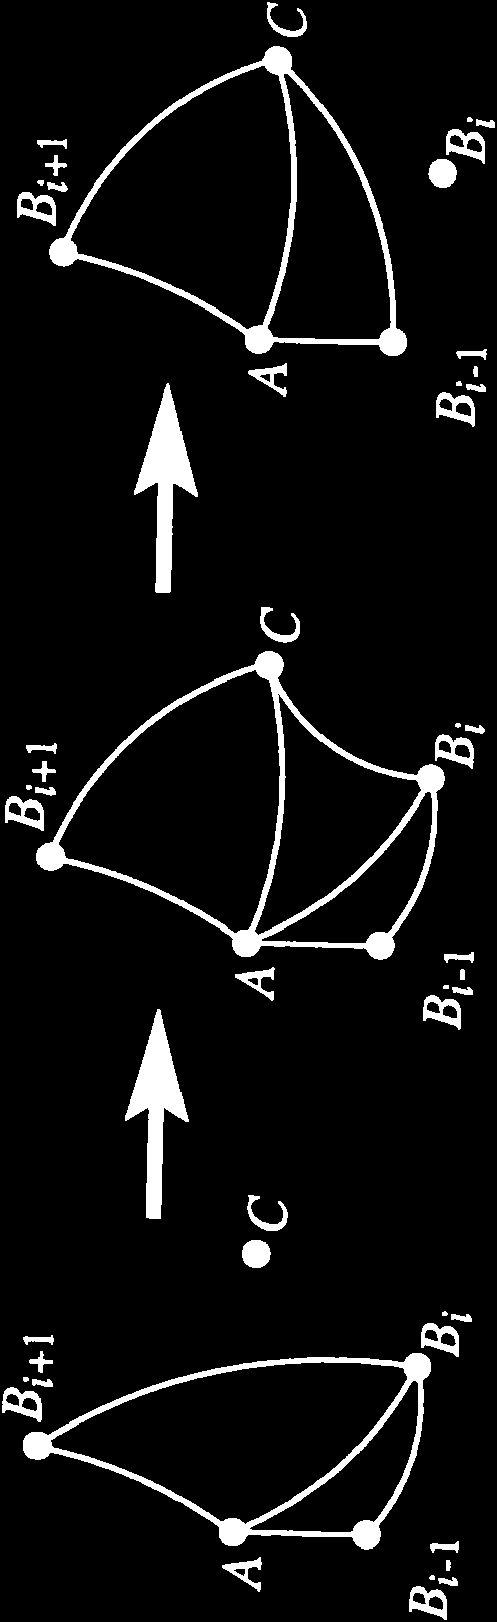 3D háromszögelés 3 Előfeldolgozás octree lokális normálvektor becslés szomszédsági gráf Lokális Delaunay-háromszögelés pontonként a normál síkban A és C összekötése (?